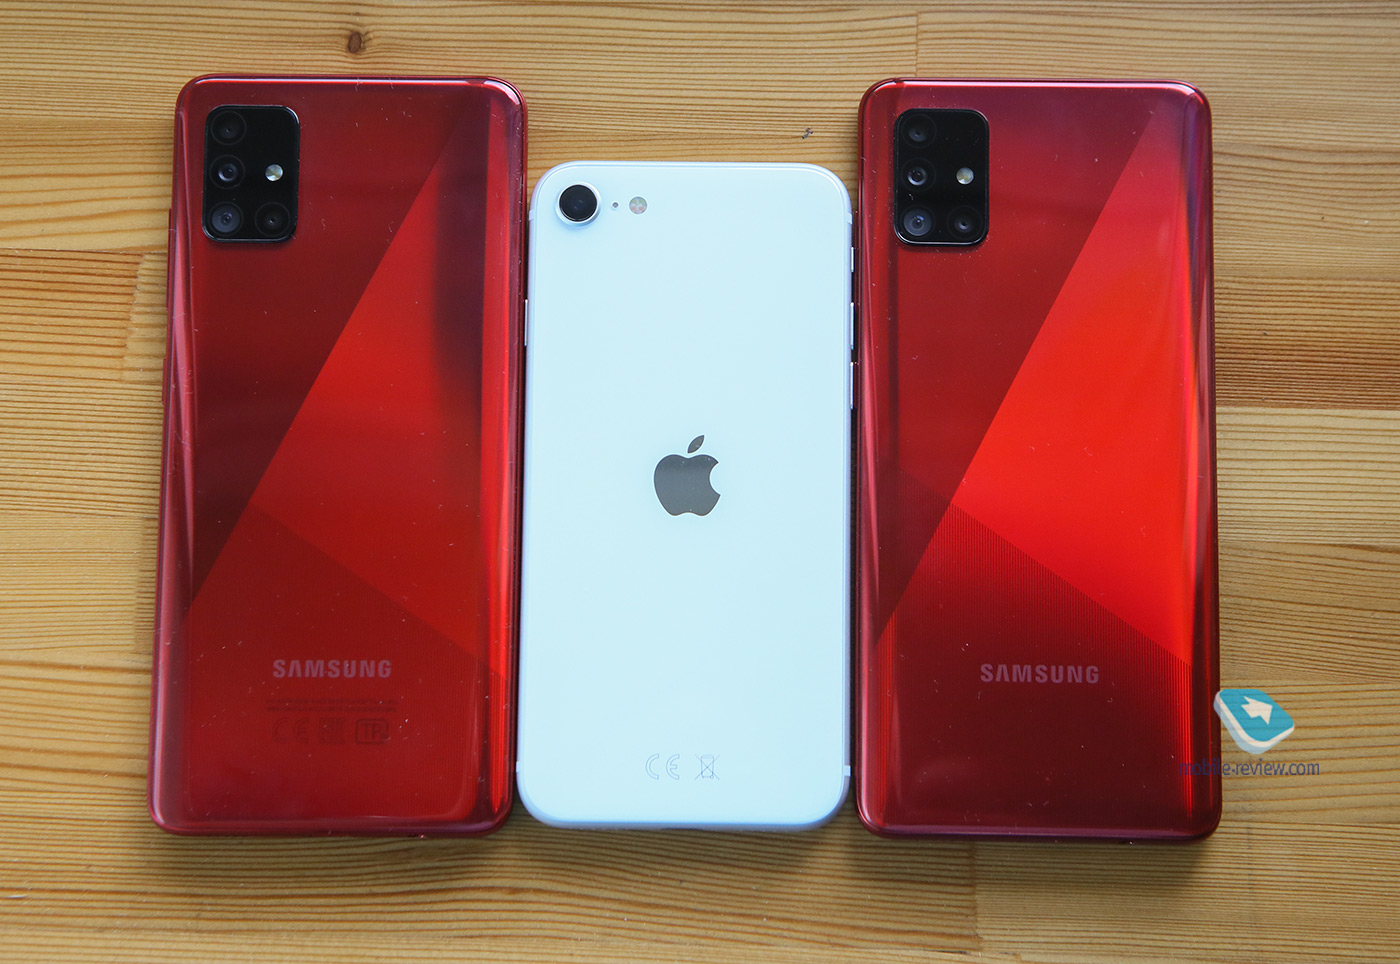 Buyer's guide. IPhone SE 2020 vs Galaxy A51 comparison